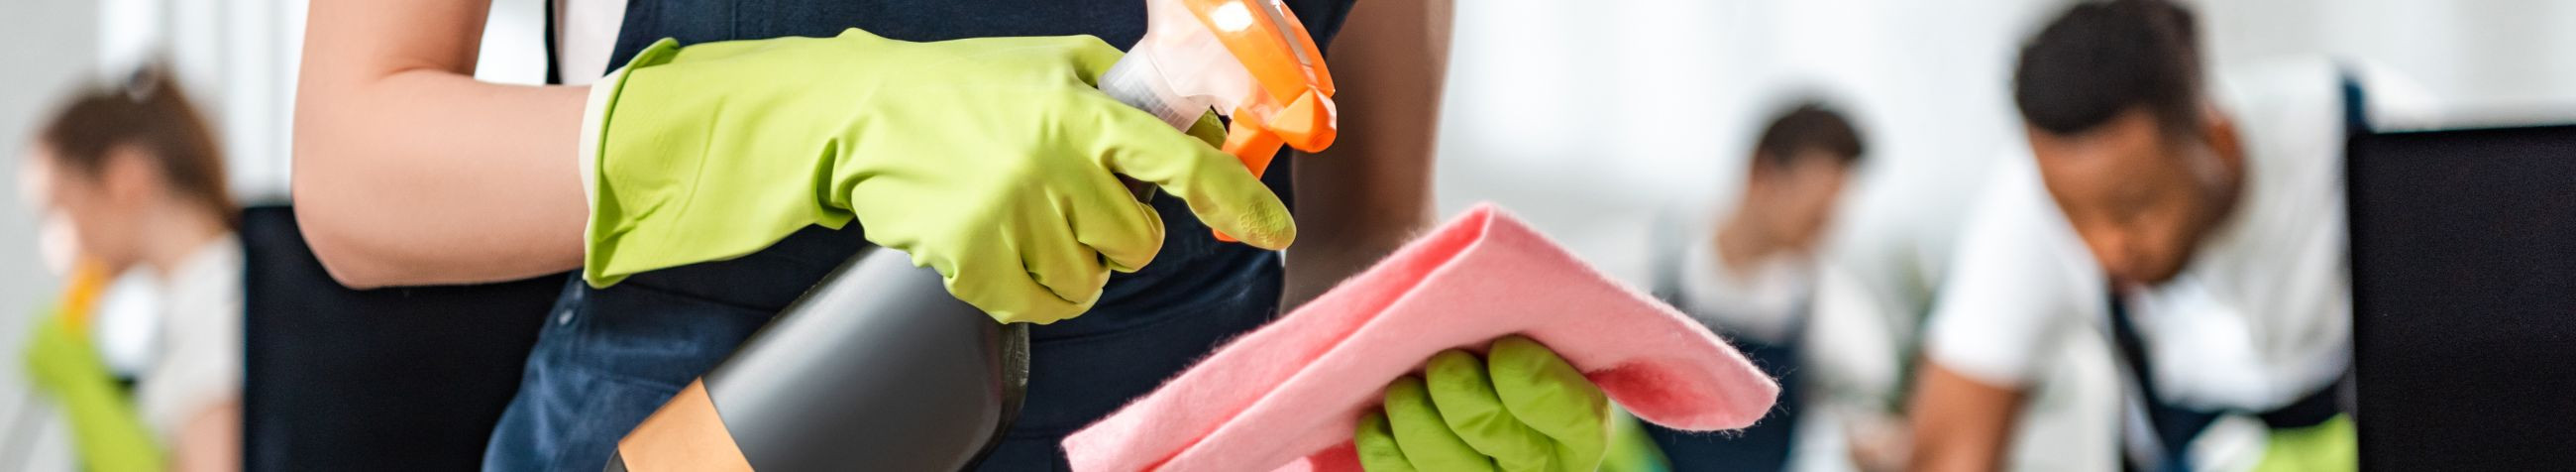 Pakume laia valikut professionaalseid puhastusteenuseid, alates koduhooldusest kuni spetsialiseeritud põrandatöötlusteni, tagades kliendile puhtuse ja mugavuse igas olukorras.